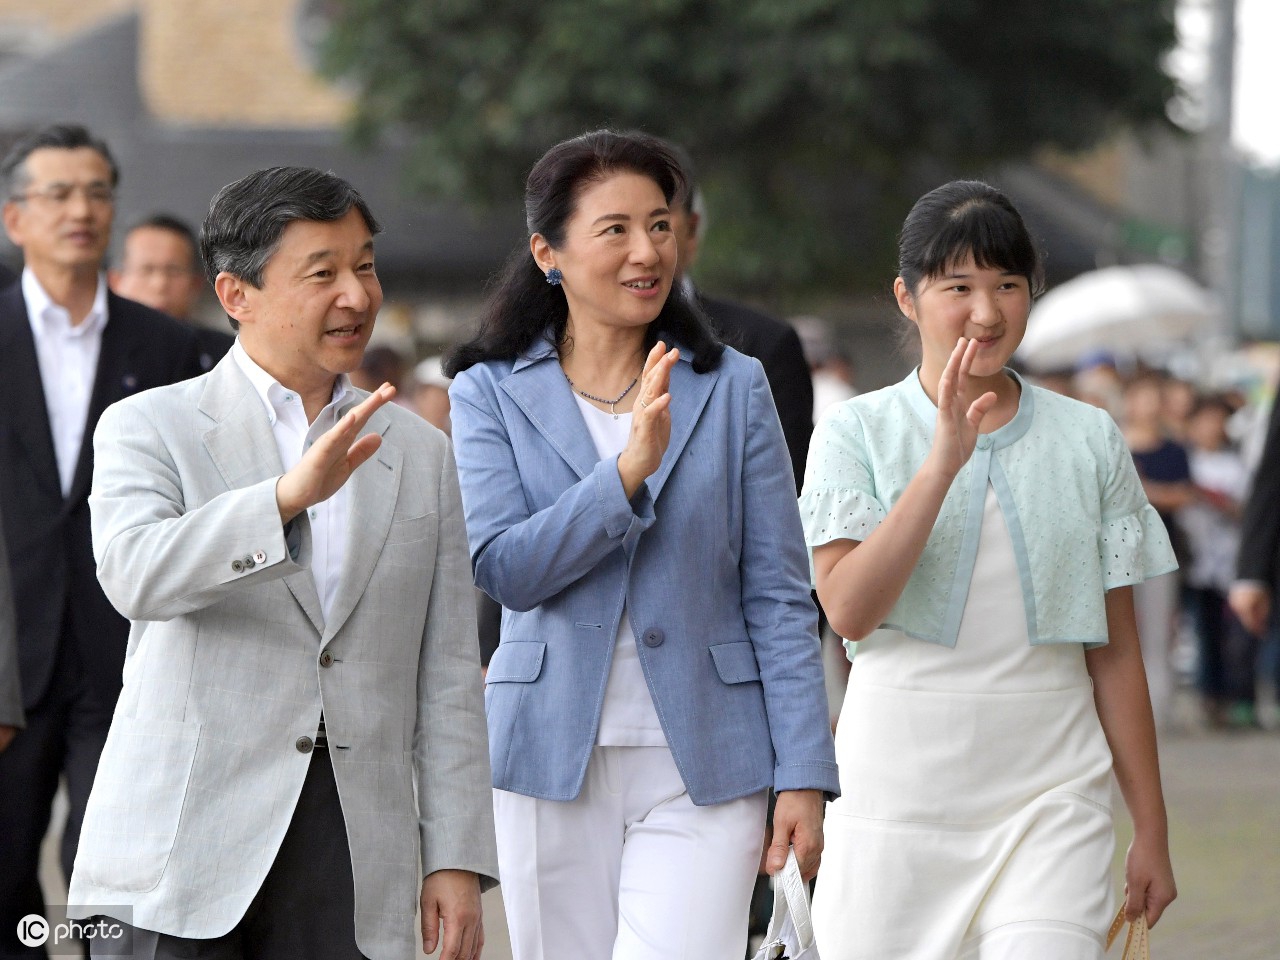 日本皇太子德仁,太子妃雅子和女儿公主爱子(图片来自 ic photo)